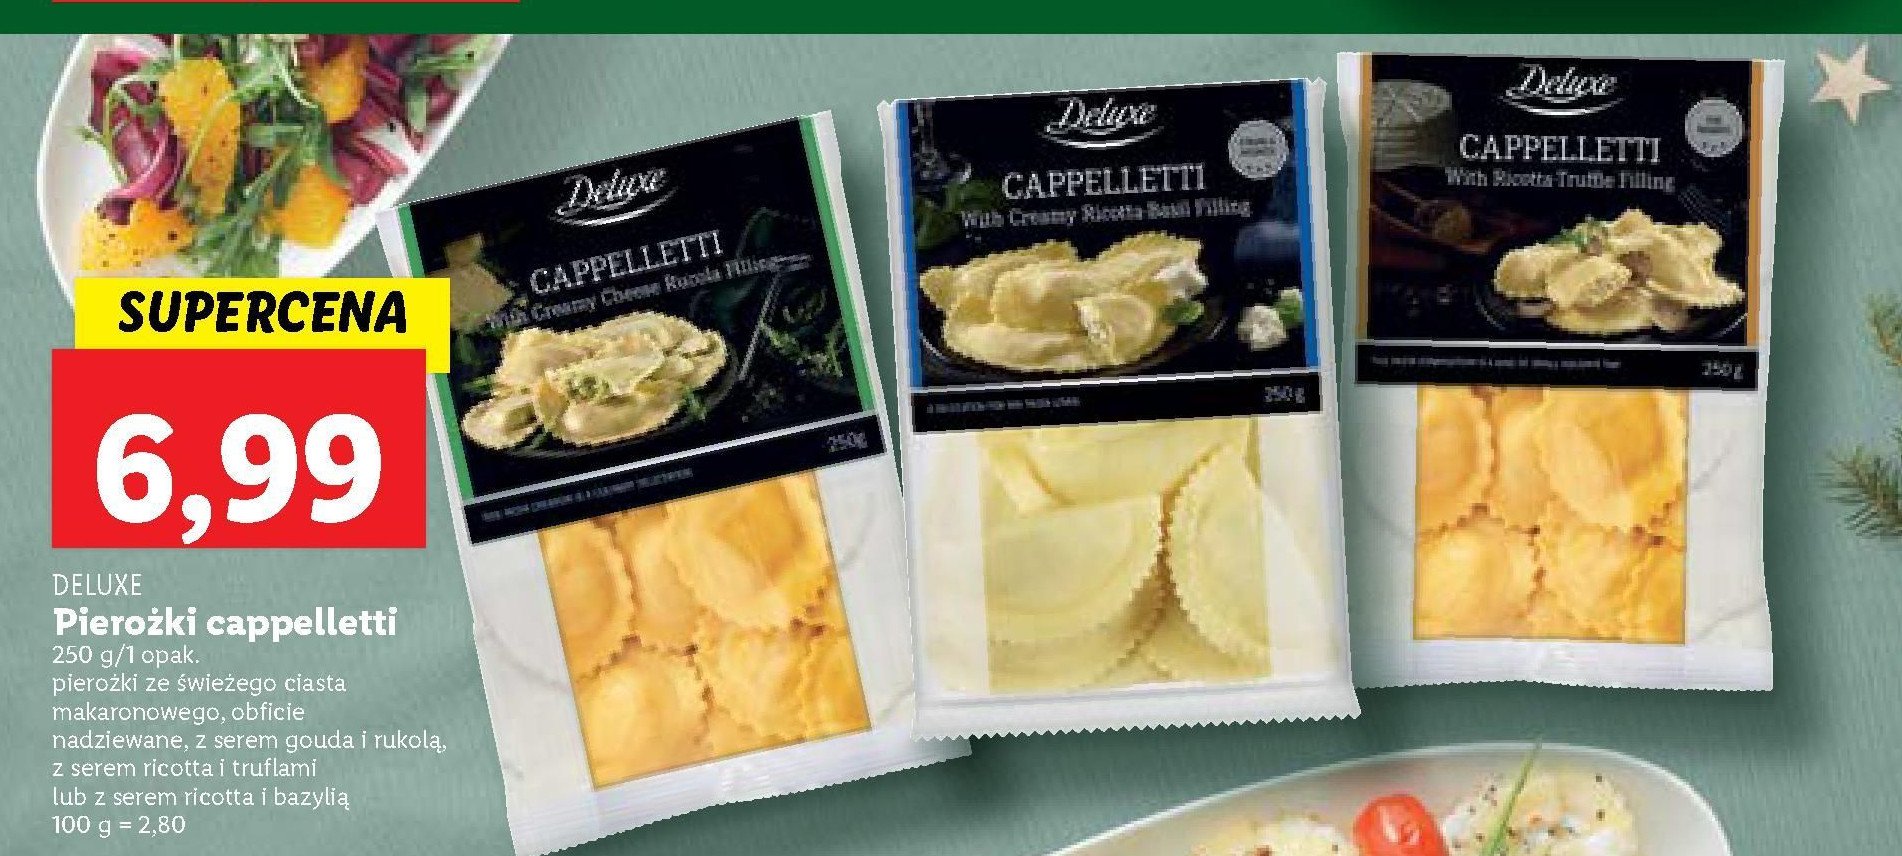 Cappelletti z serem i rukolą Deluxe promocja